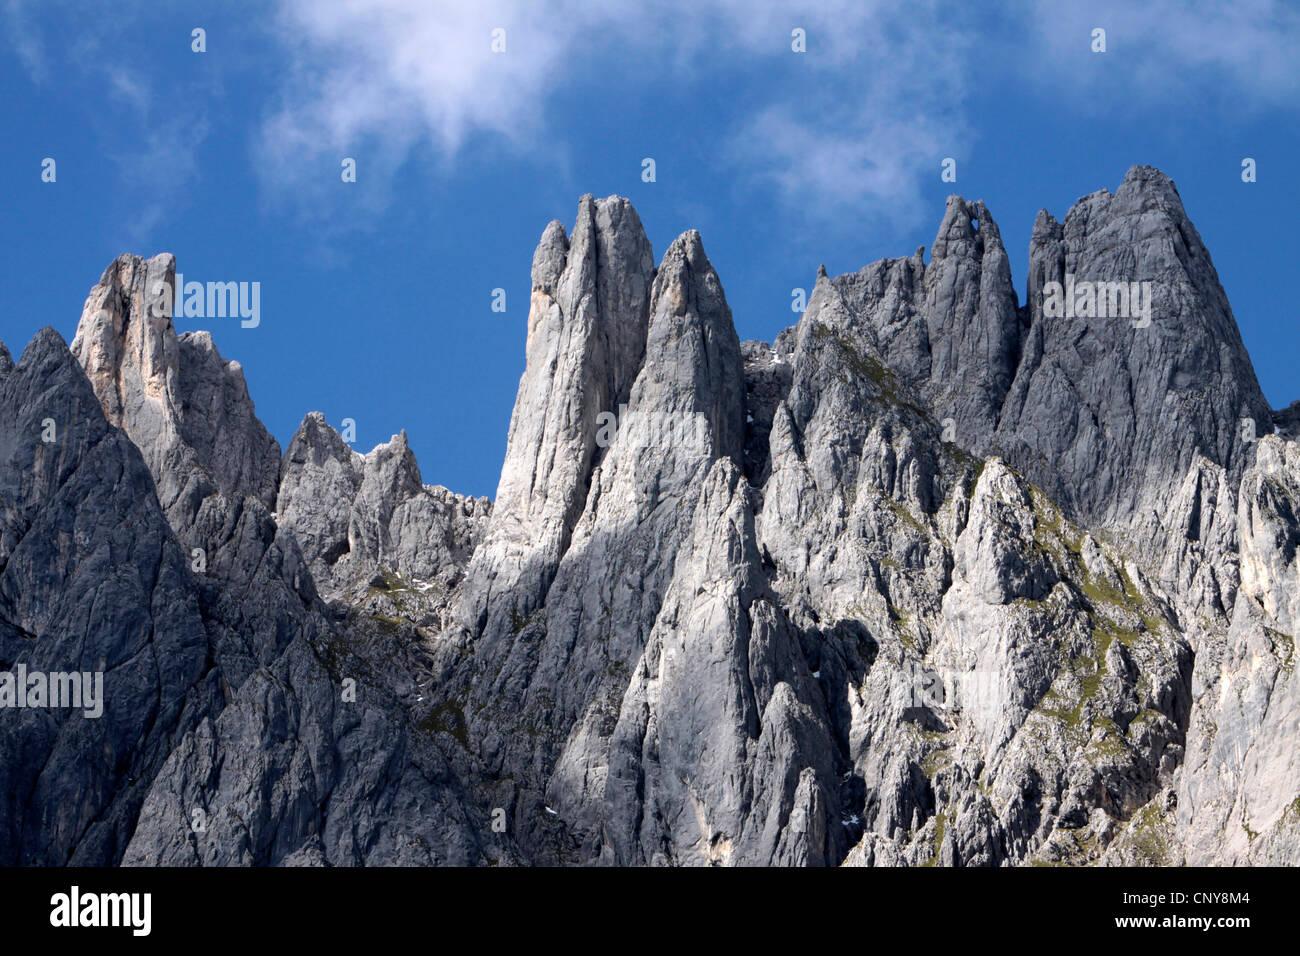 jagged mountain peaks of Hochkoenig, Austria Stock Photo